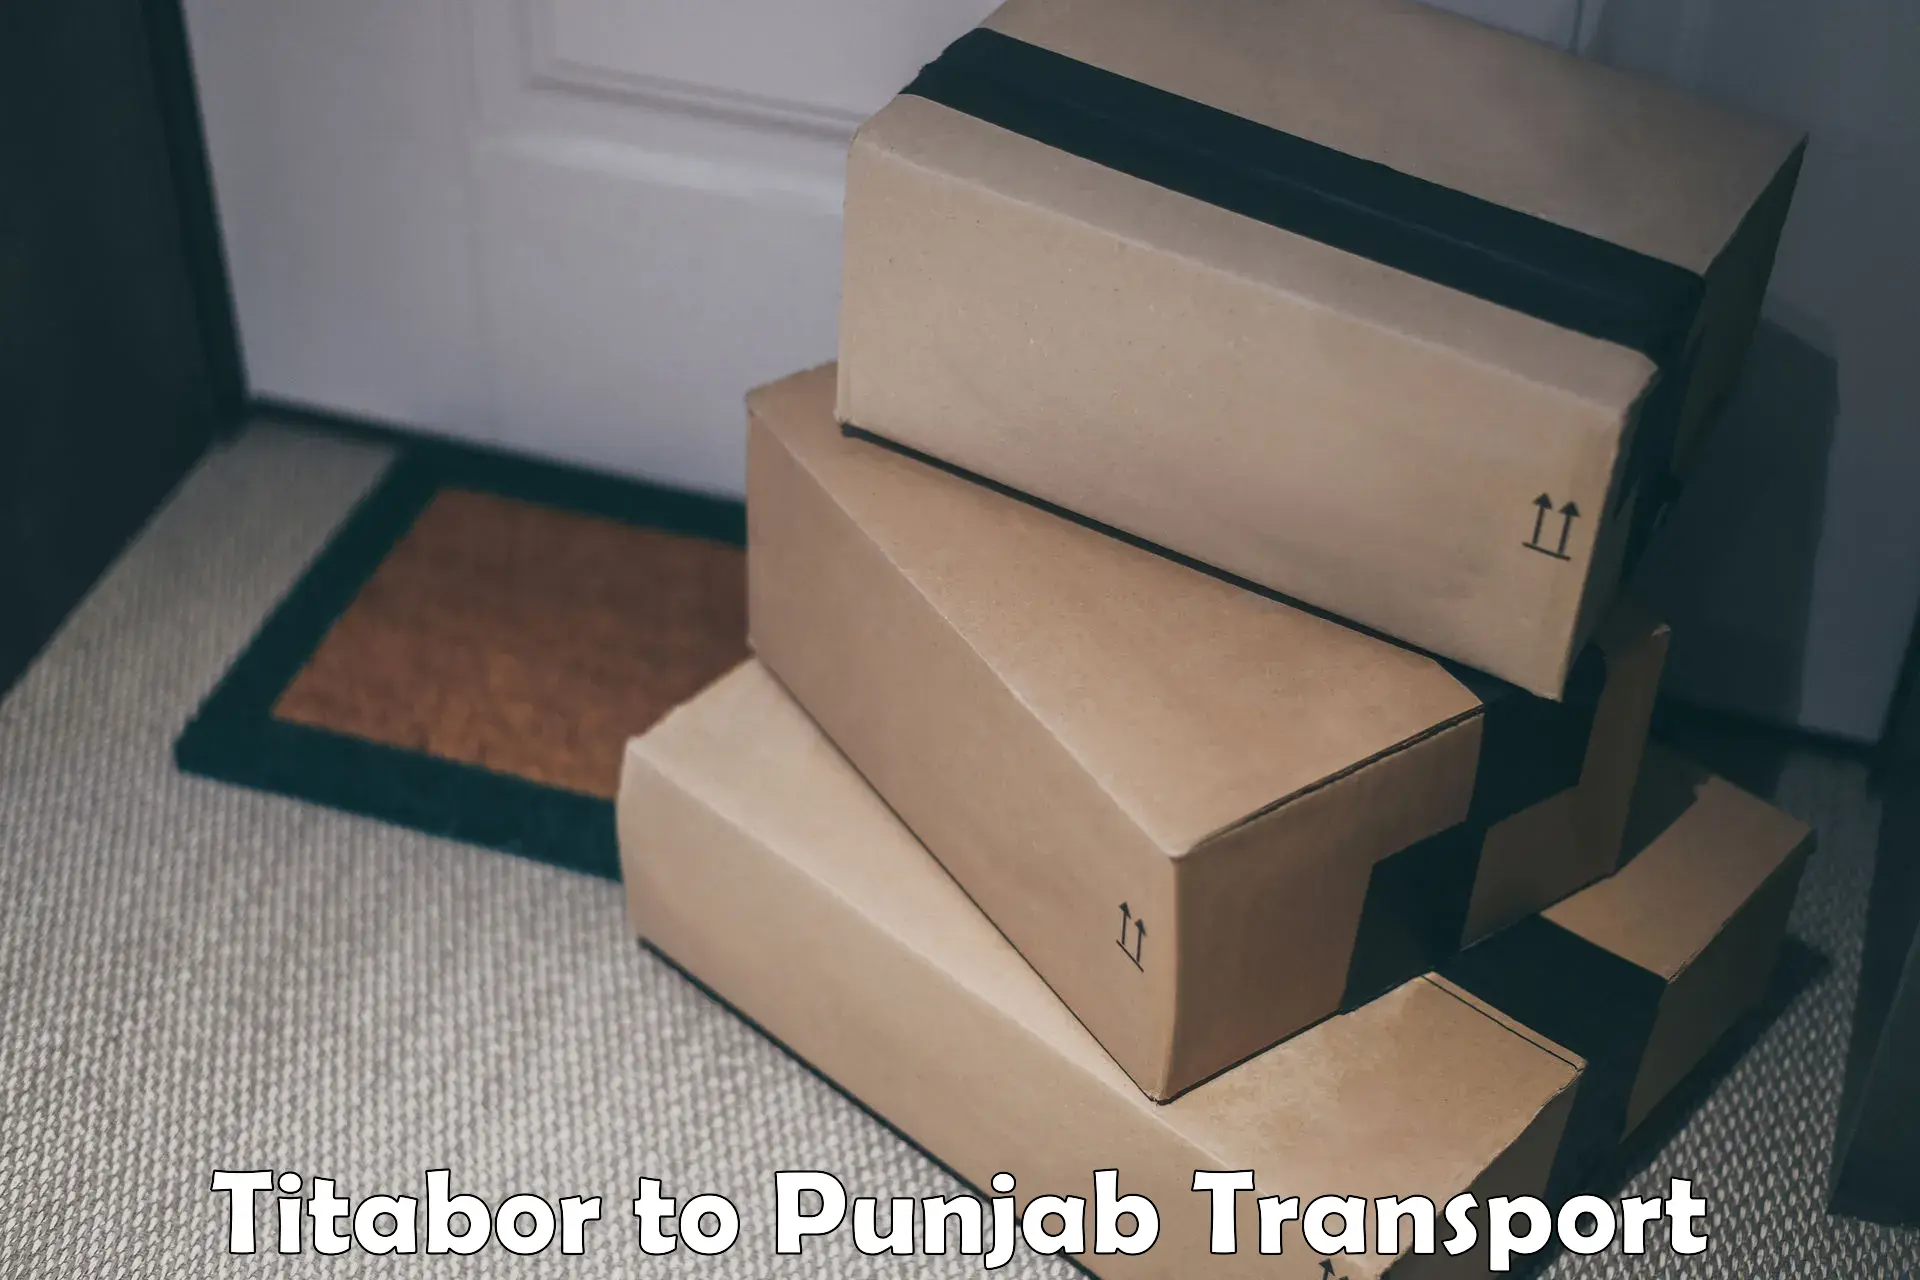 Parcel transport services Titabor to Punjab